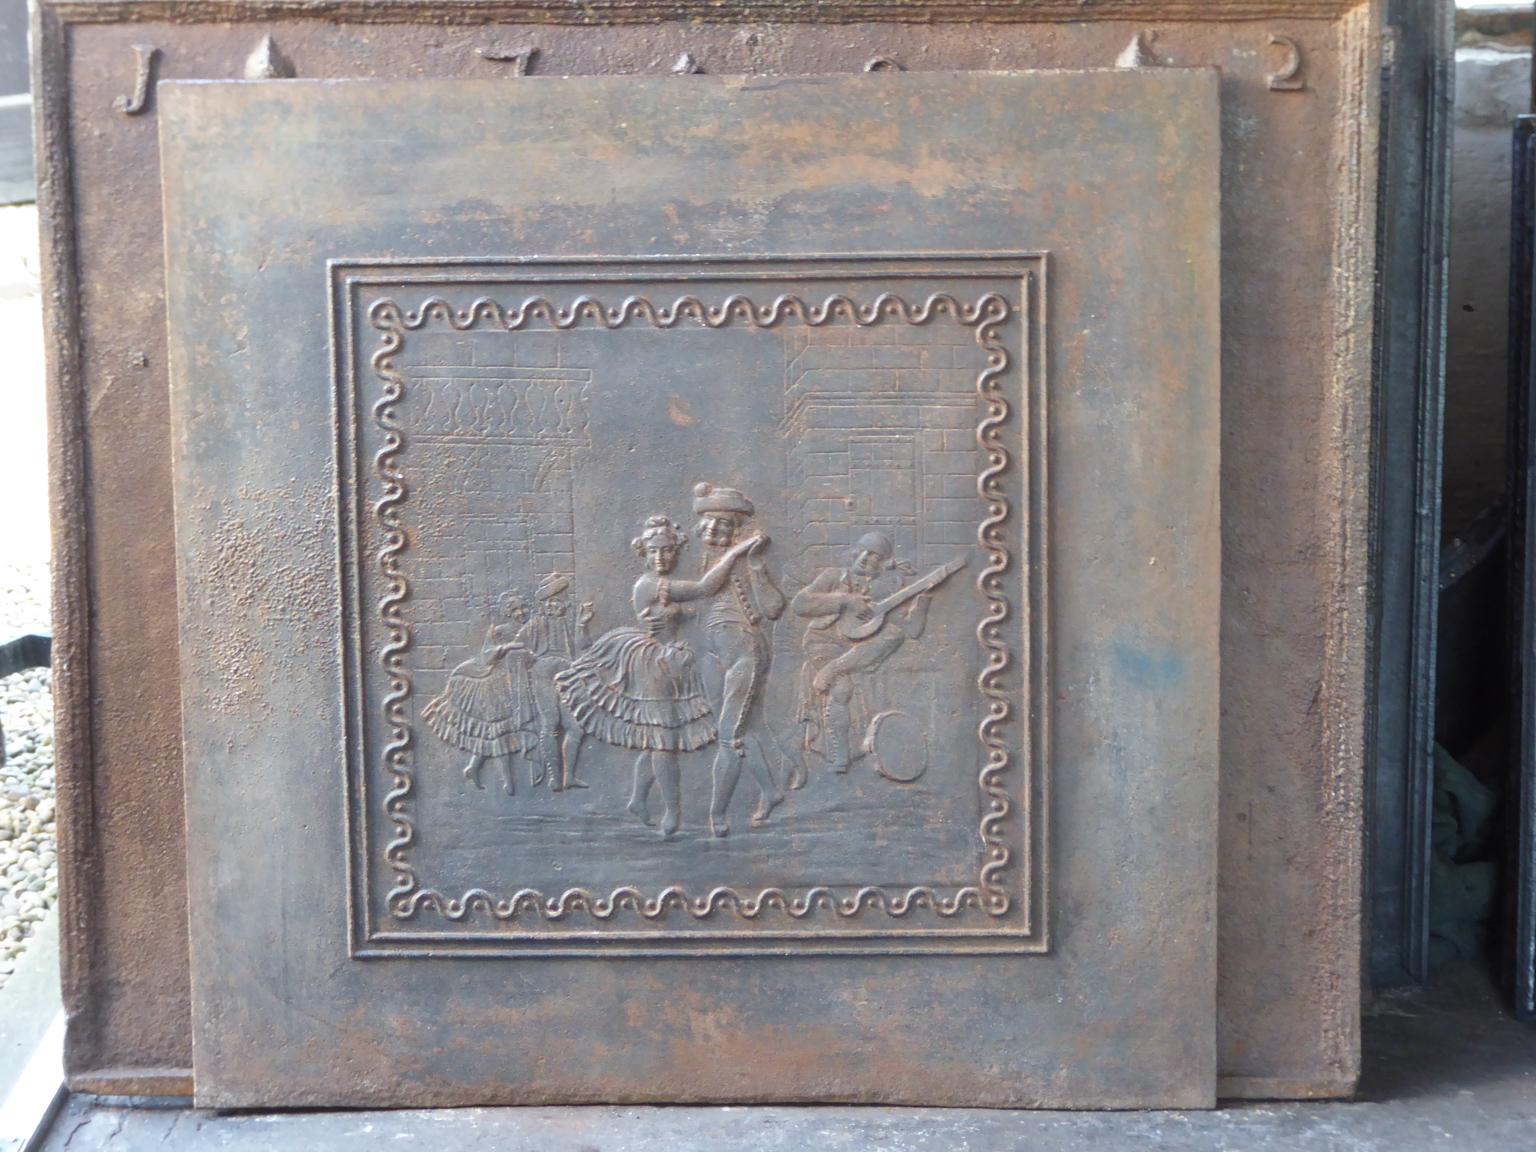 Plaque de cheminée française du 20e siècle de style Napoléon III avec deux danseuses.

La plaque de cheminée est en fonte et a une patine brune naturelle. Sur demande, il peut être réalisé en noir / étain. Il est en bon état et ne présente pas de